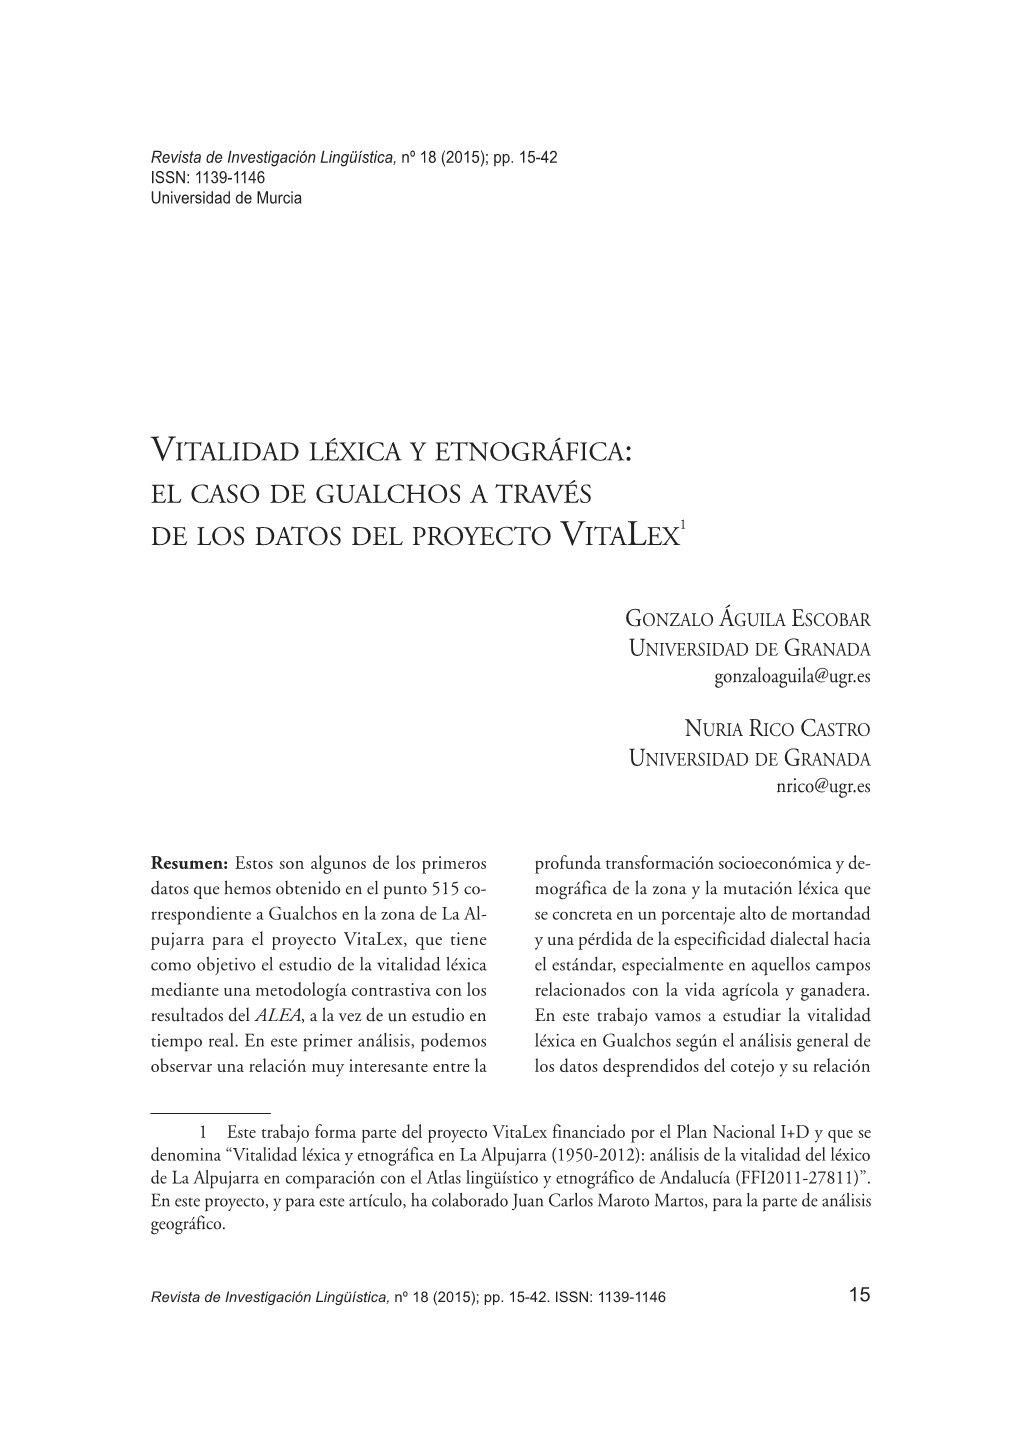 Vitalidad Léxica Y Etnográfica: El Caso De Gualchos a Través De Los Datos Del Proyecto Vitalex1